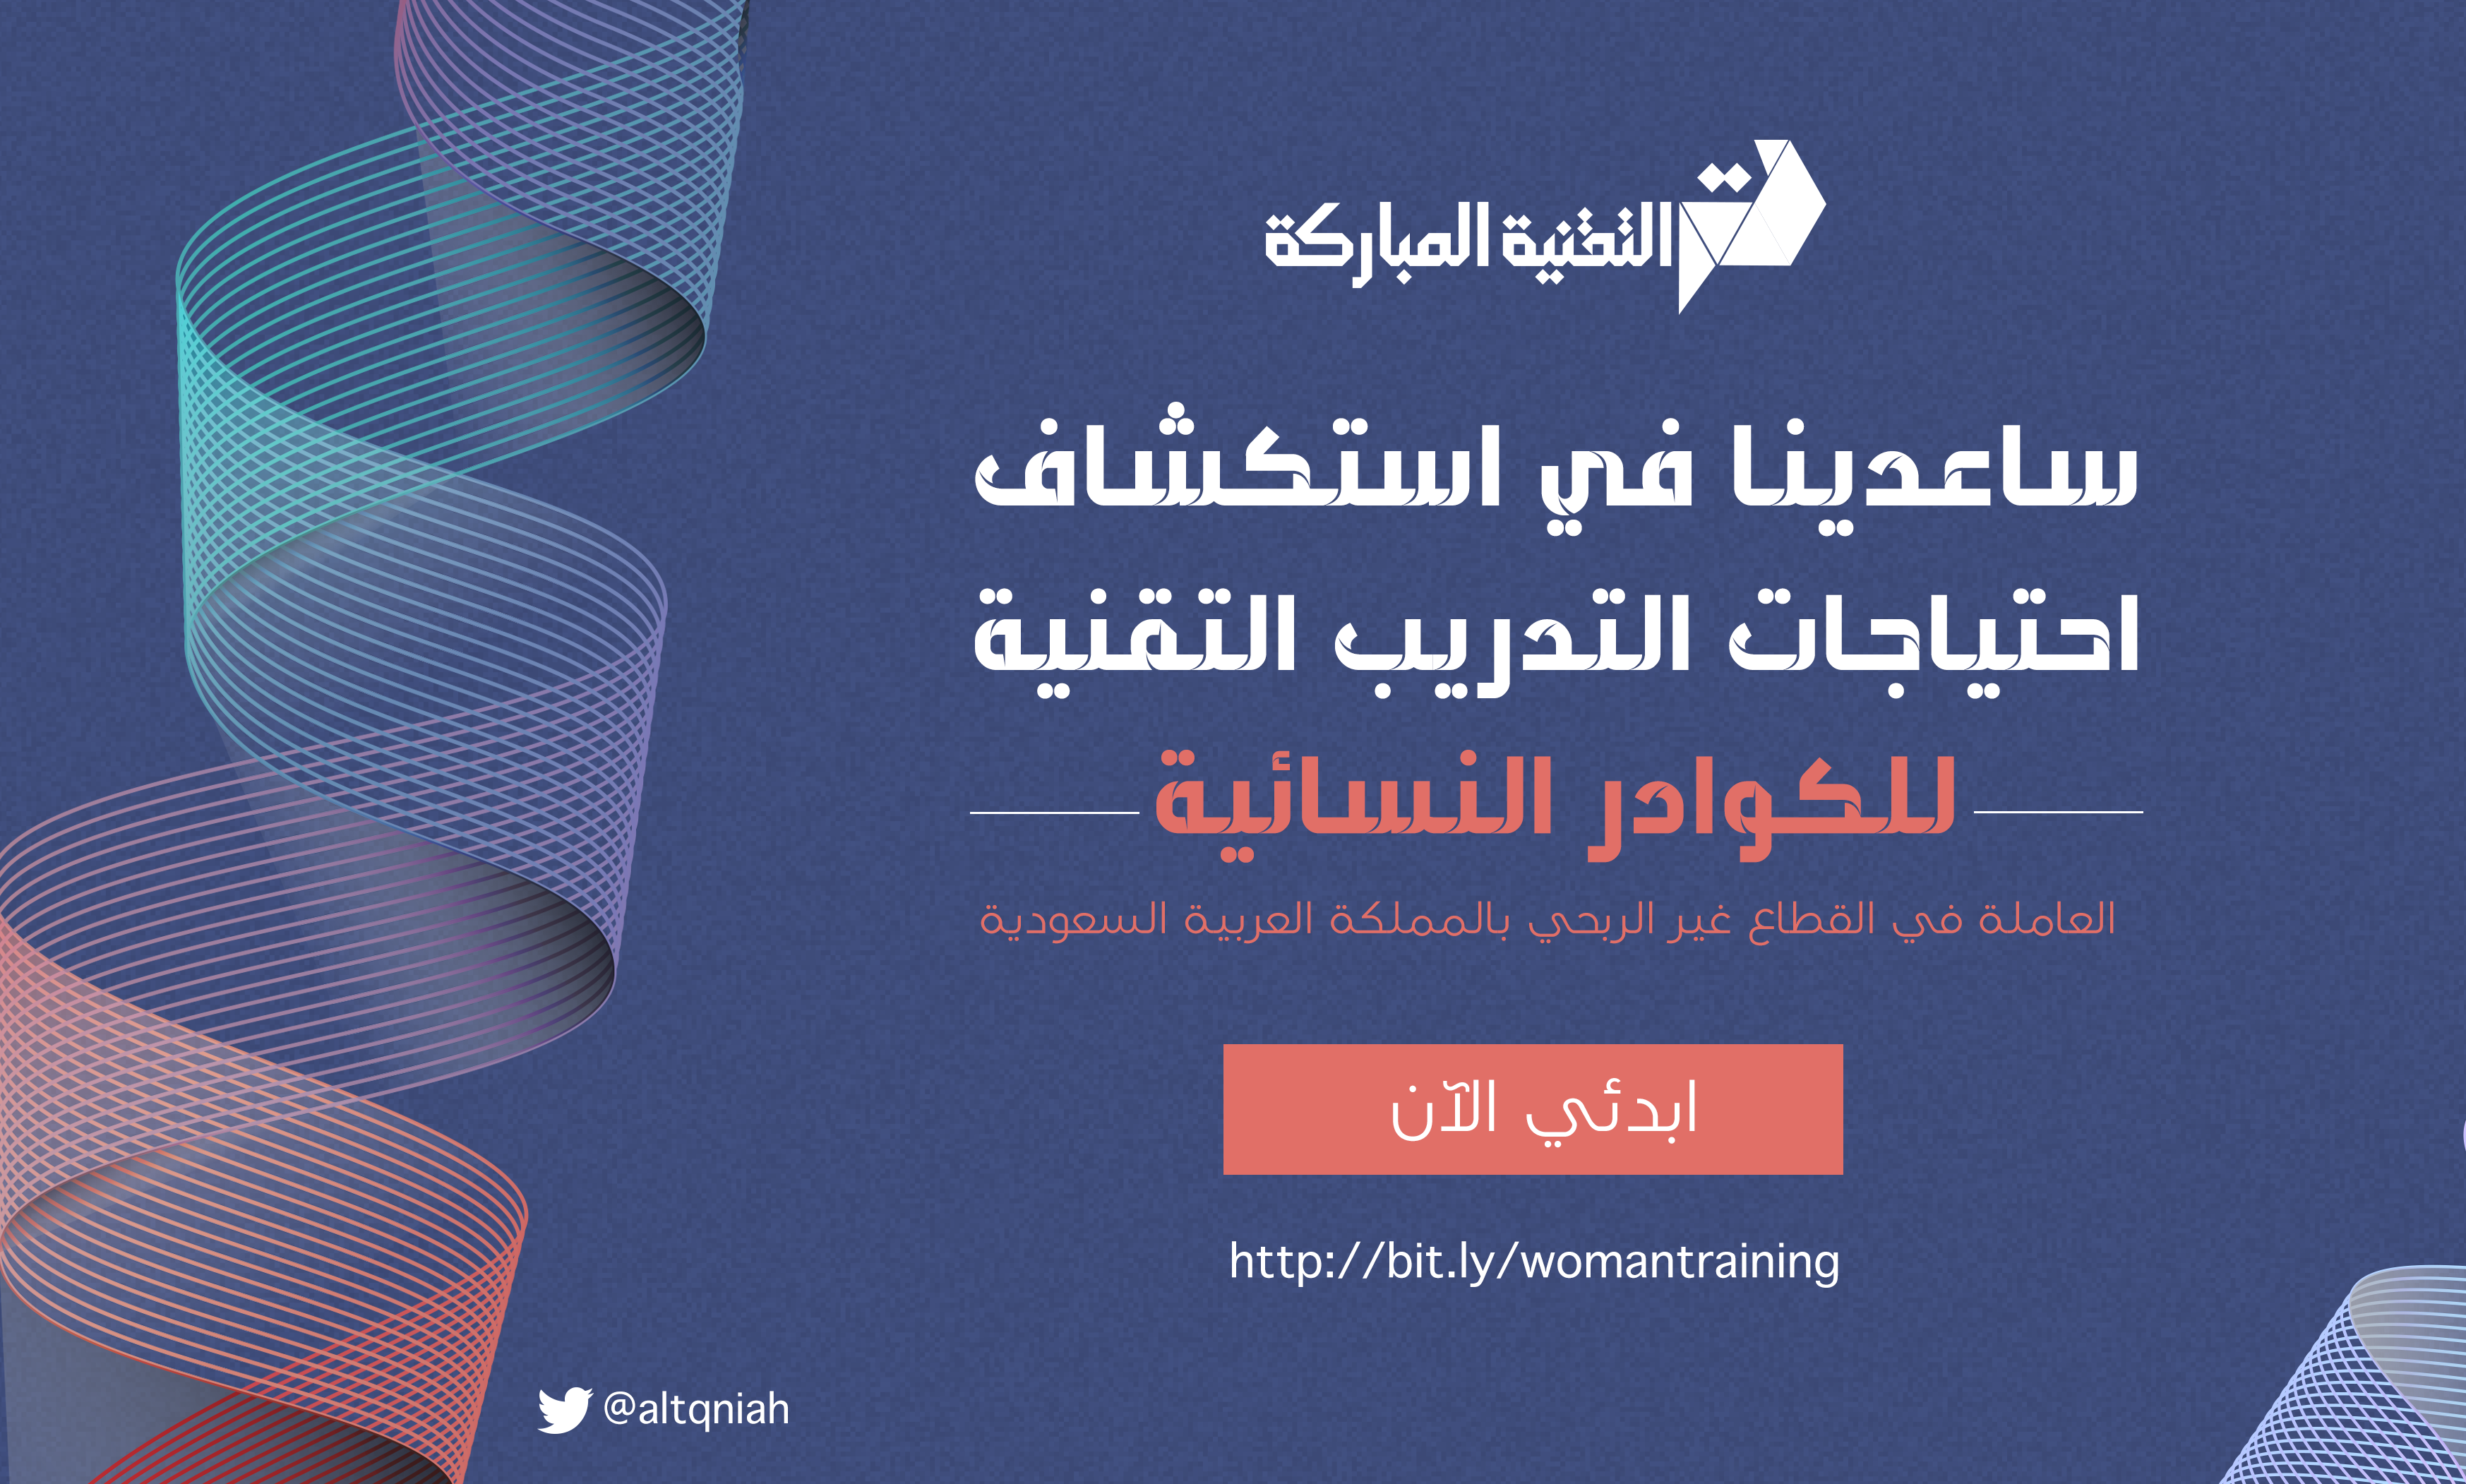  التقنية المباركة تدرس احتياجات التدريب التقنية للكوادر النسائية العاملة في القطاع غير الربحي السعودي